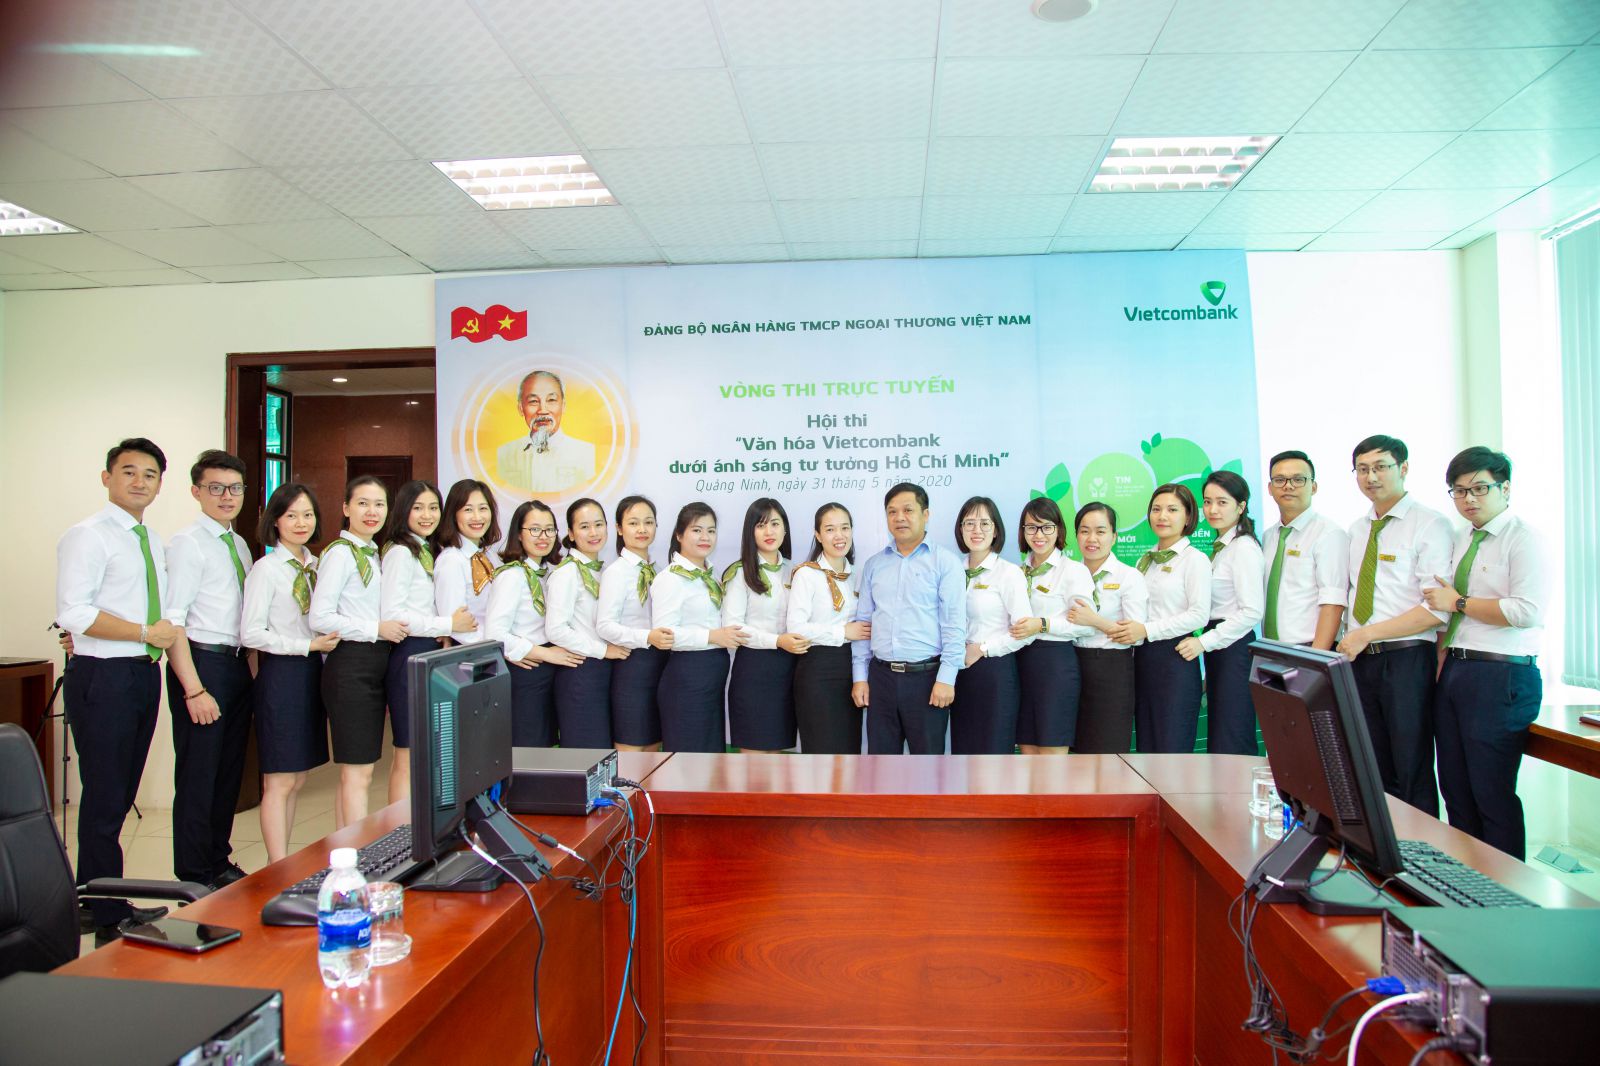 Ông Hoàng Quốc Chiến, Bí thư Chi bộ, Giám đốc Vietcombank Quảng Ninh (áo xanh, đứng giữa) cùng đội thi VCB Quảng Ninh tại “Hội thi Văn hóa Vietcombank”